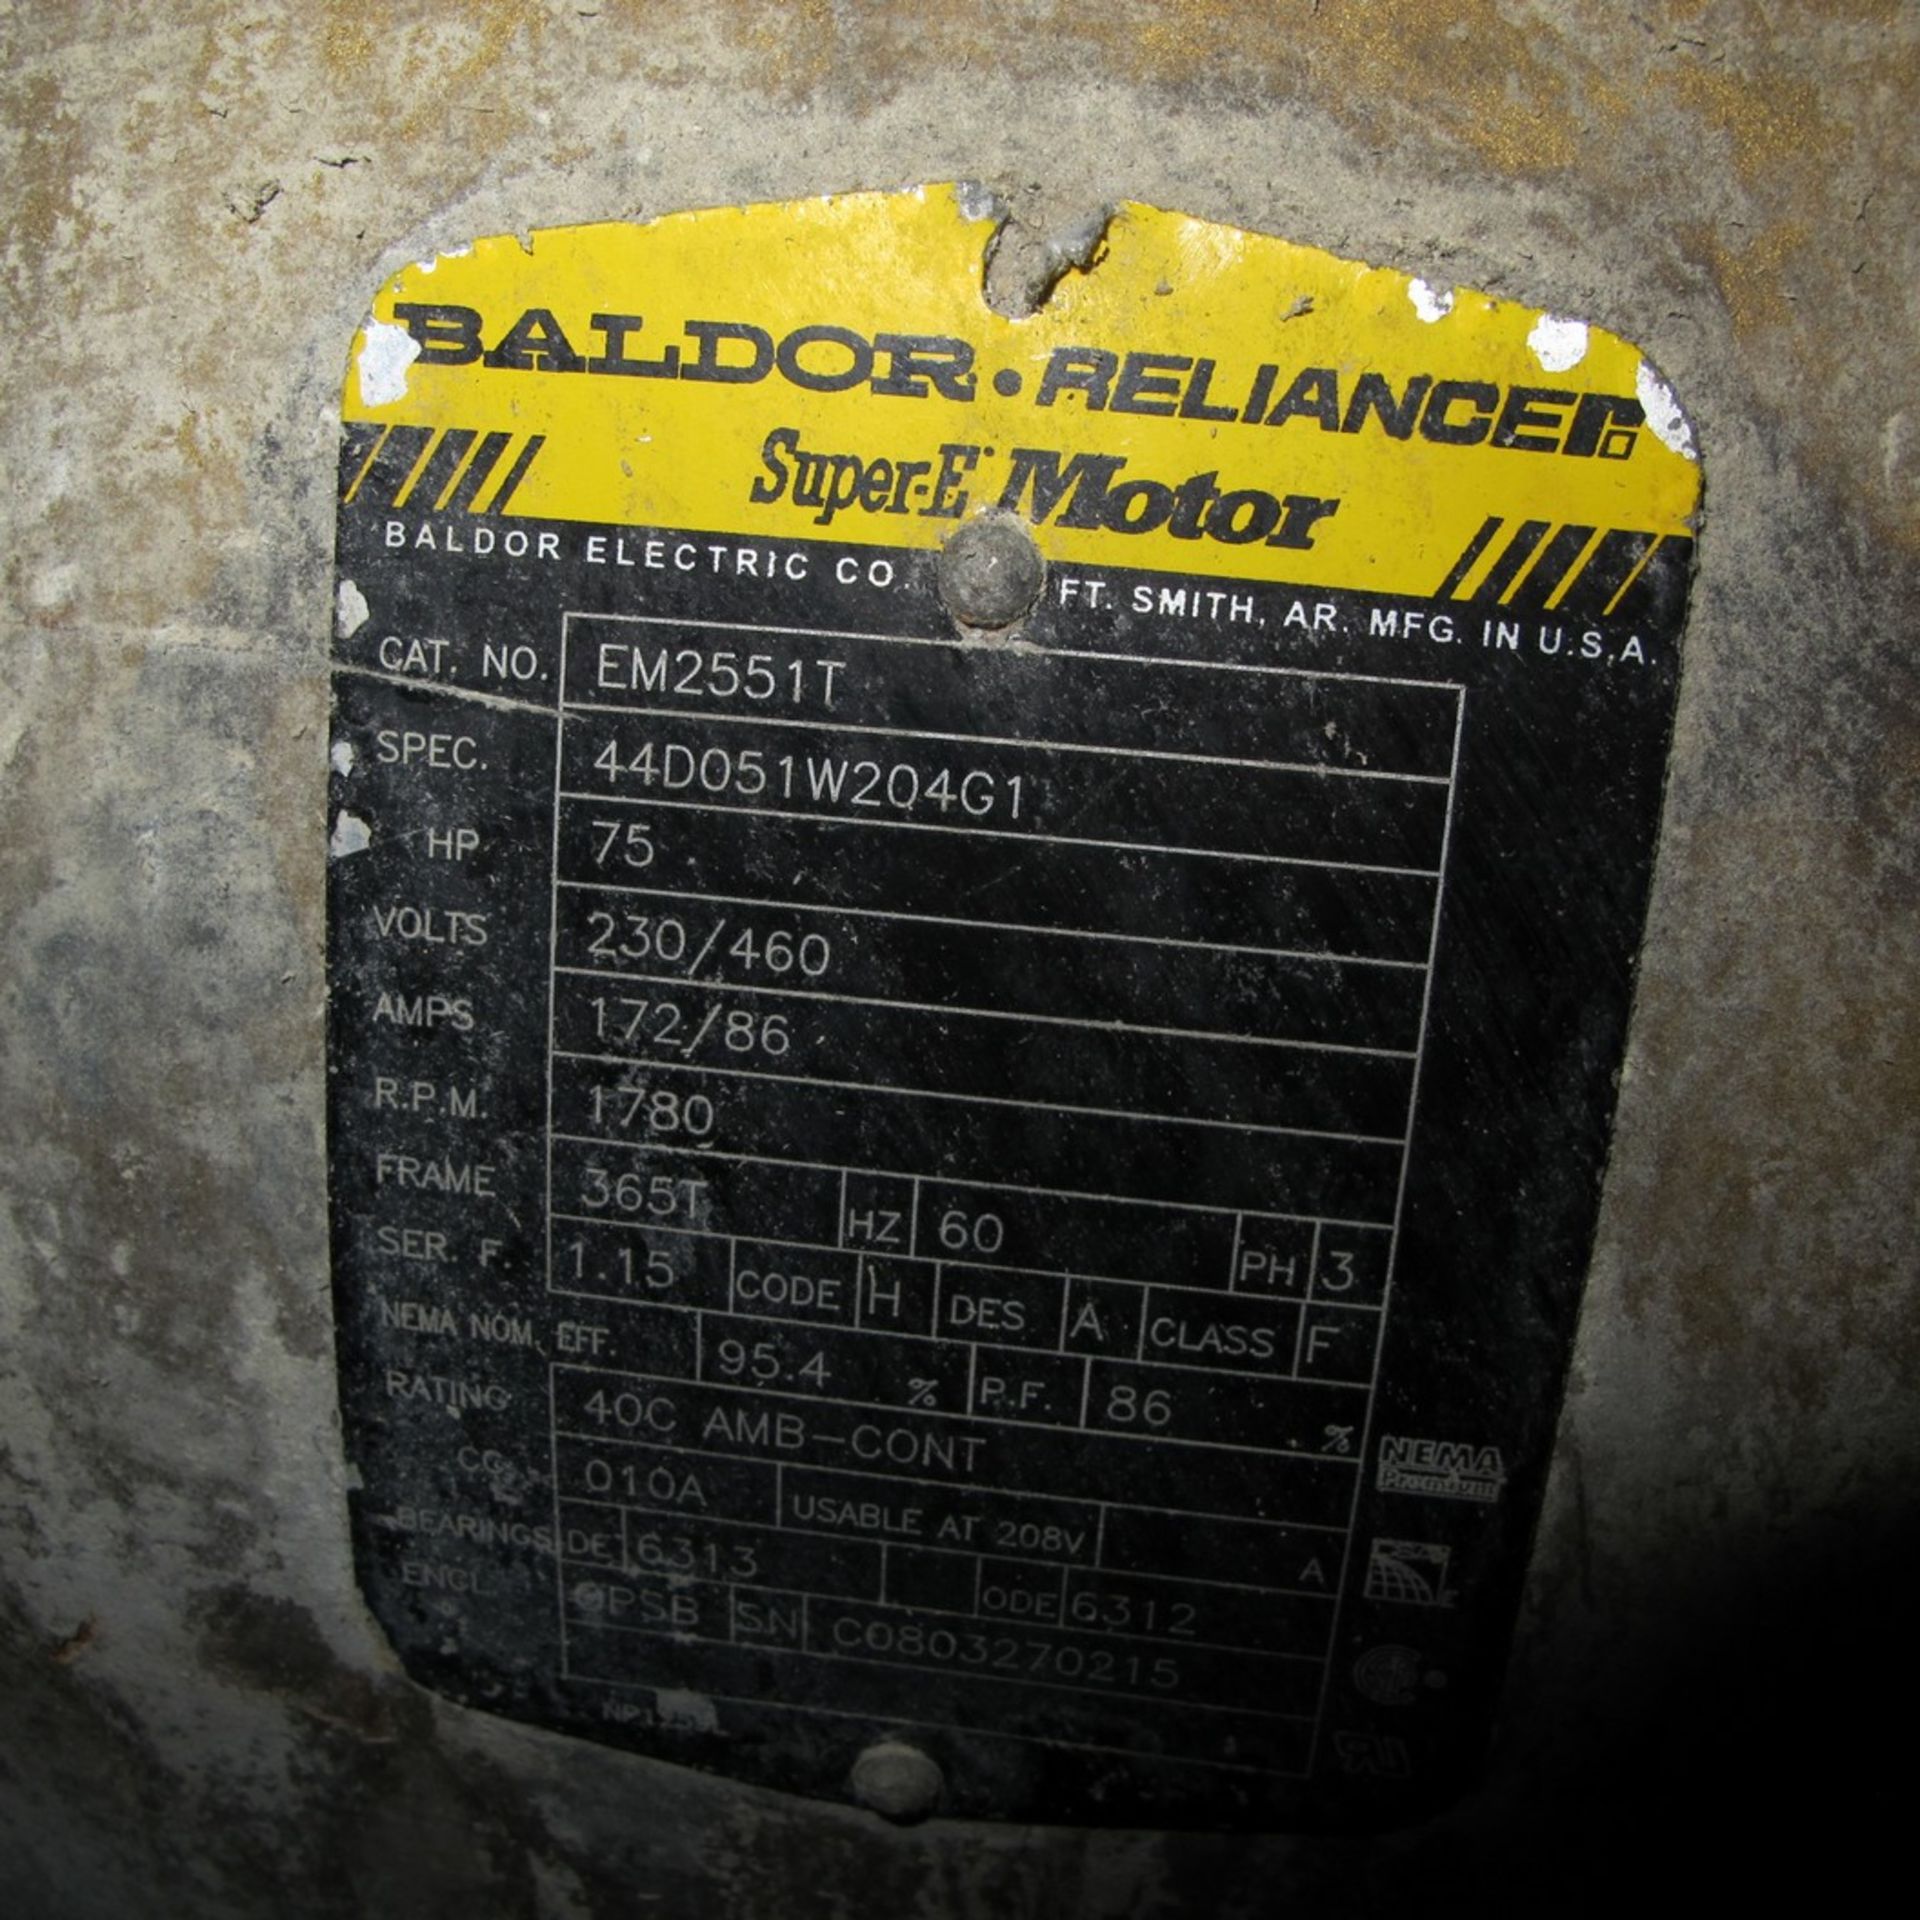 BALDOR RELIANCE SUPER E MOTOR, 75HP, 230/460V, 1,780 RPM, 365T FRAME (COMPRESSOR ROOM) - Image 2 of 2